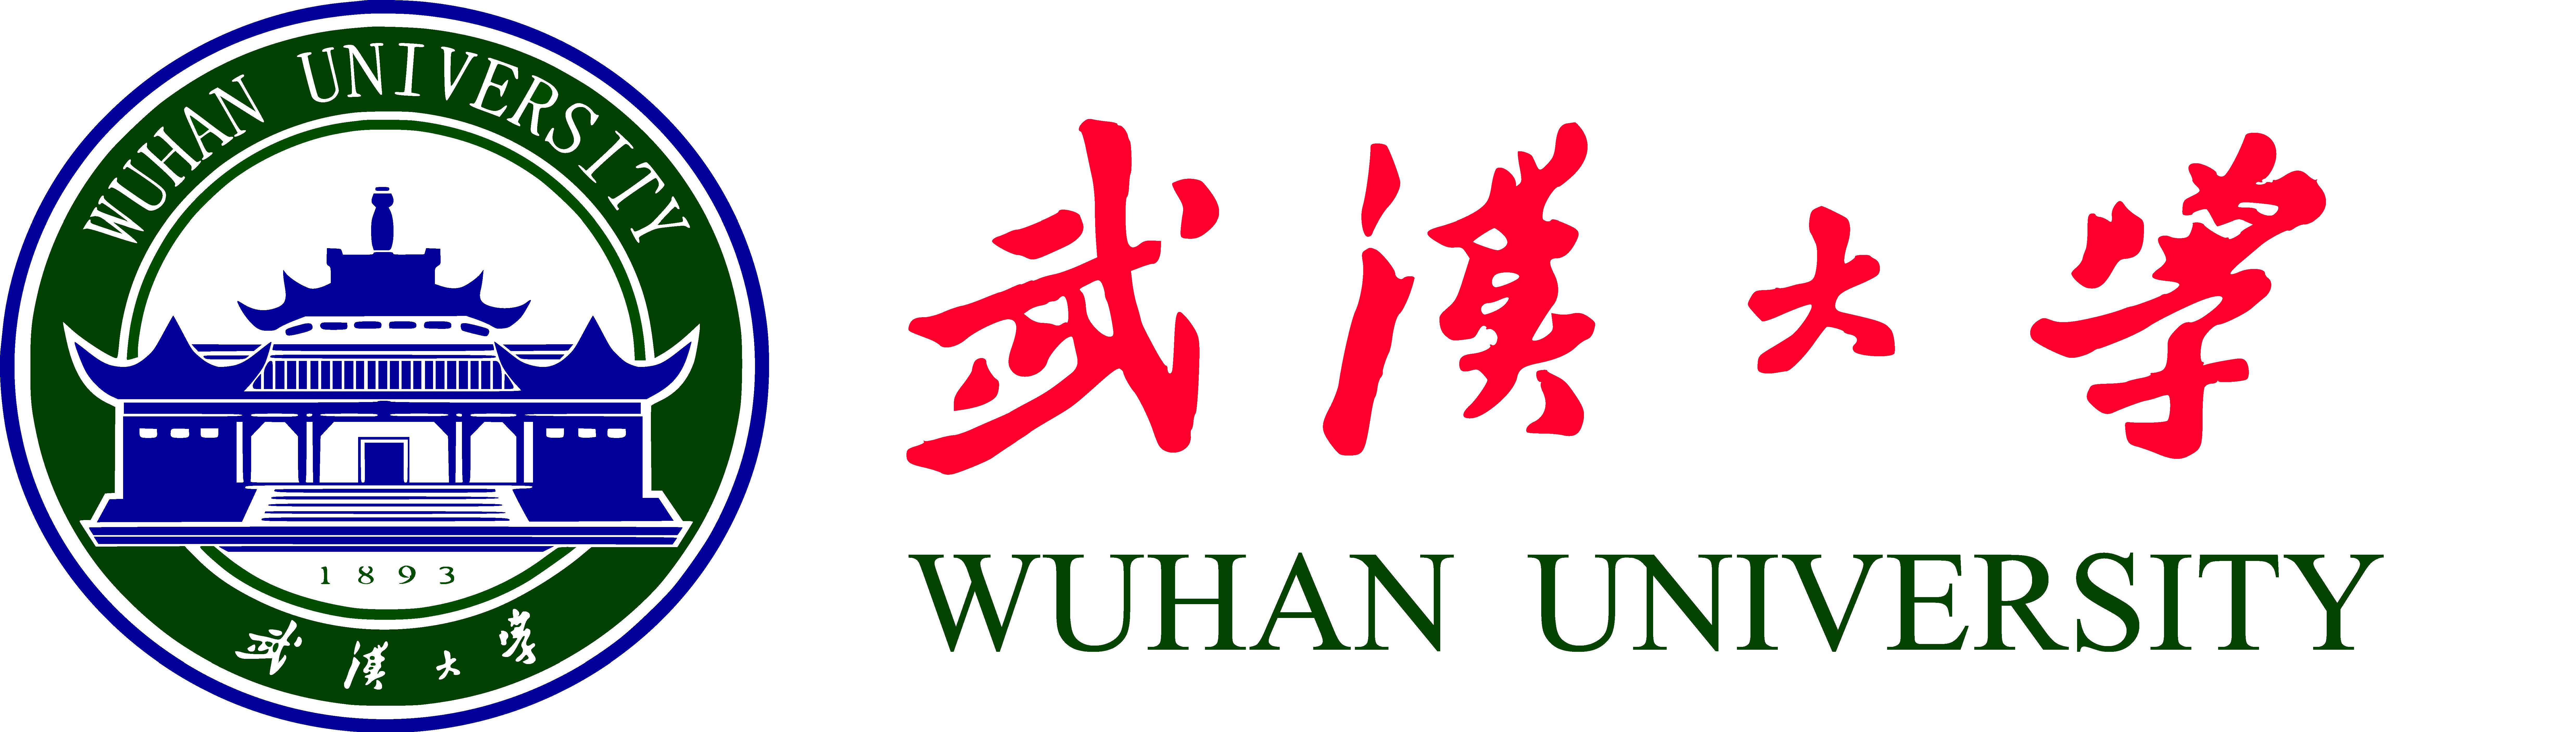 1920年6月出生于四川成都,先后毕业于武汉大学(1943)和哈佛大学(1947)